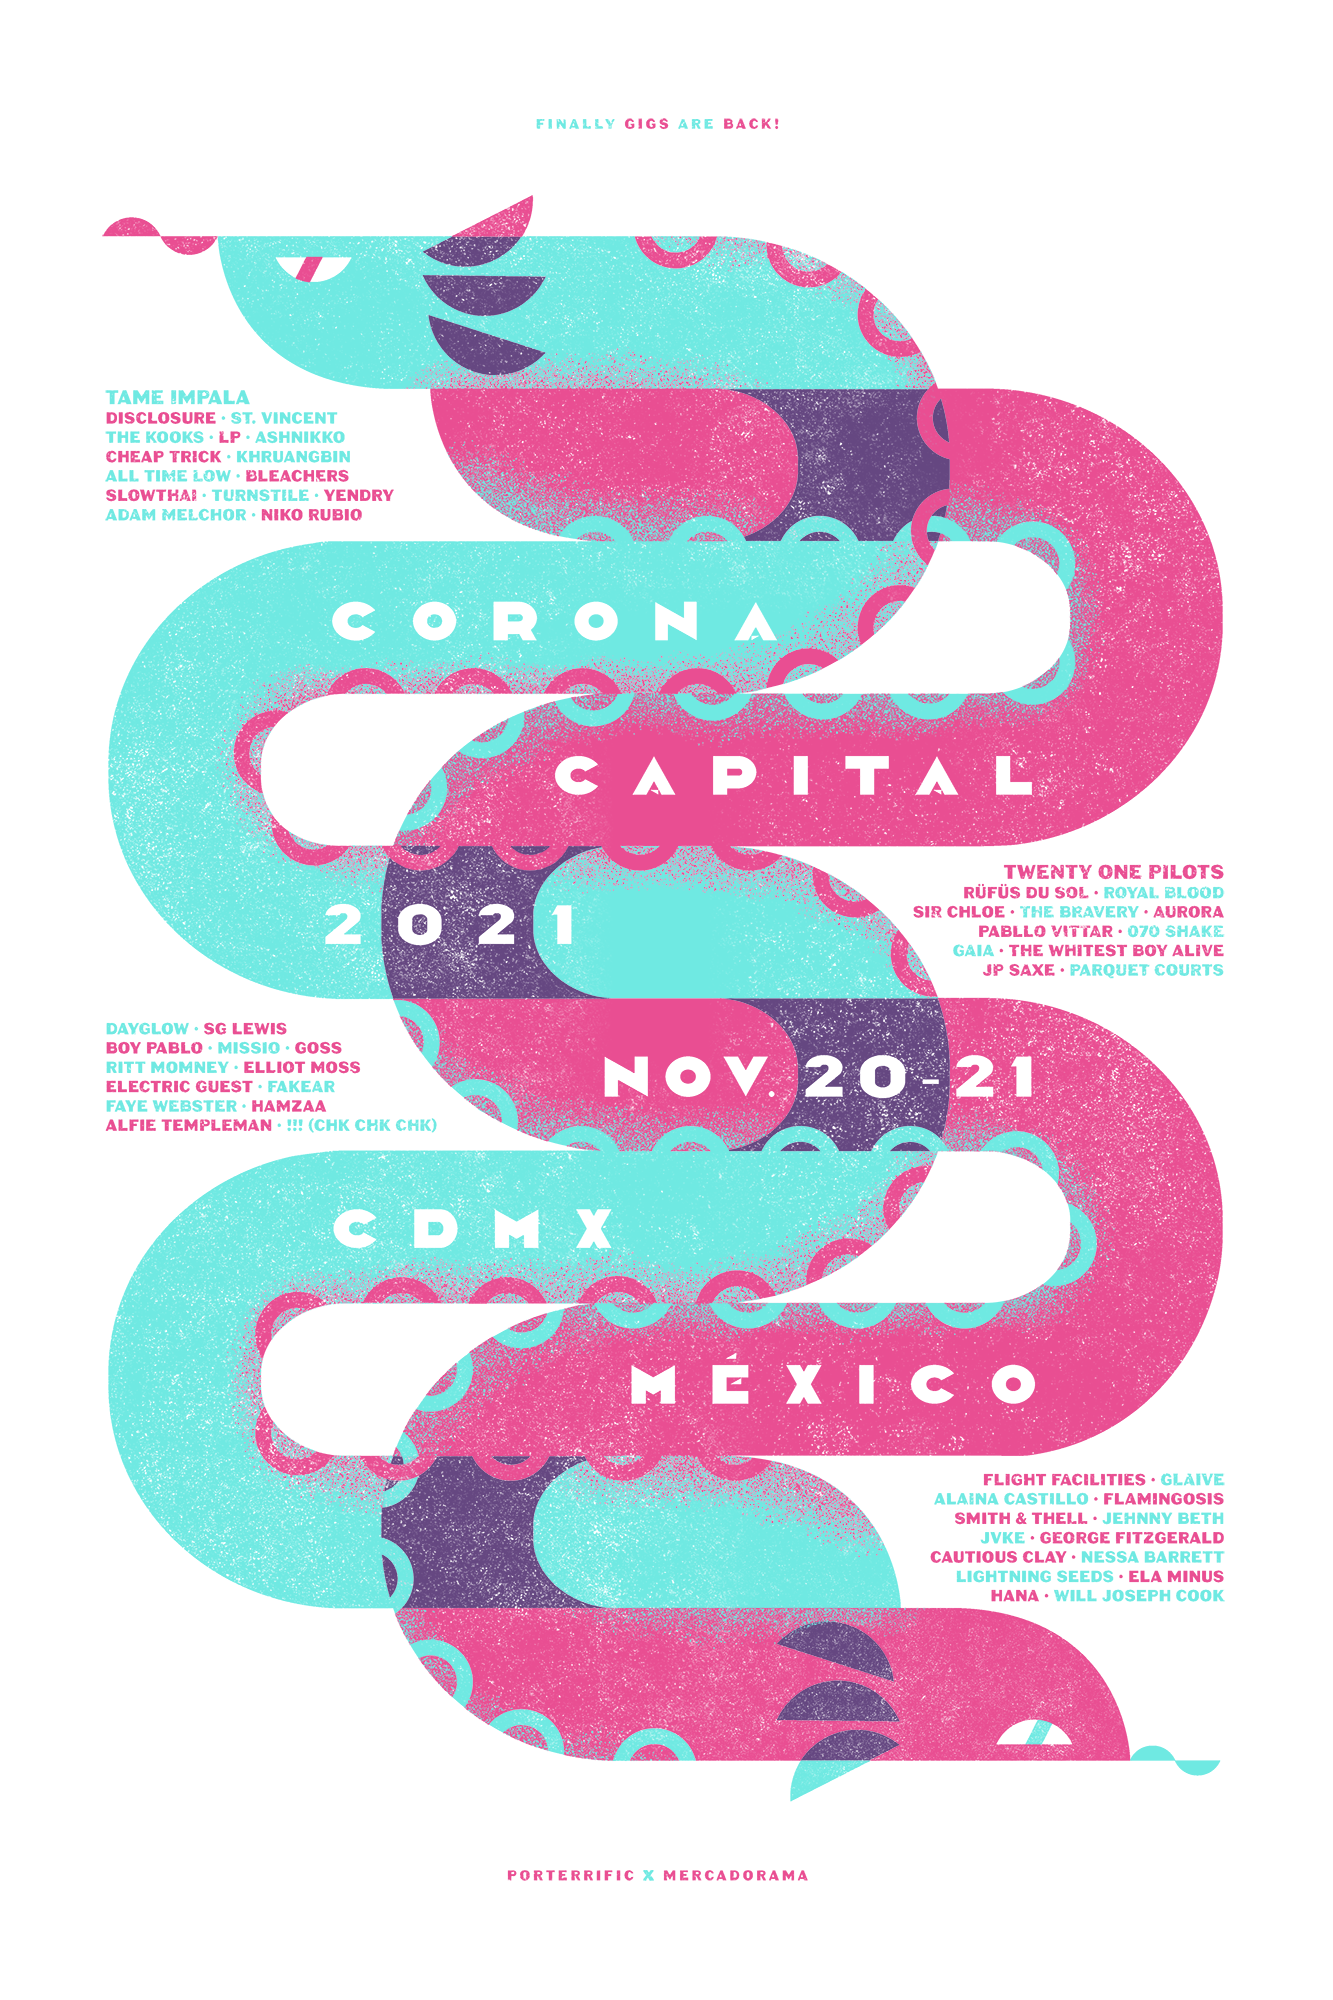 ¡Checa la exposición de arte que llega por primera vez a México al Corona Capital 2021!